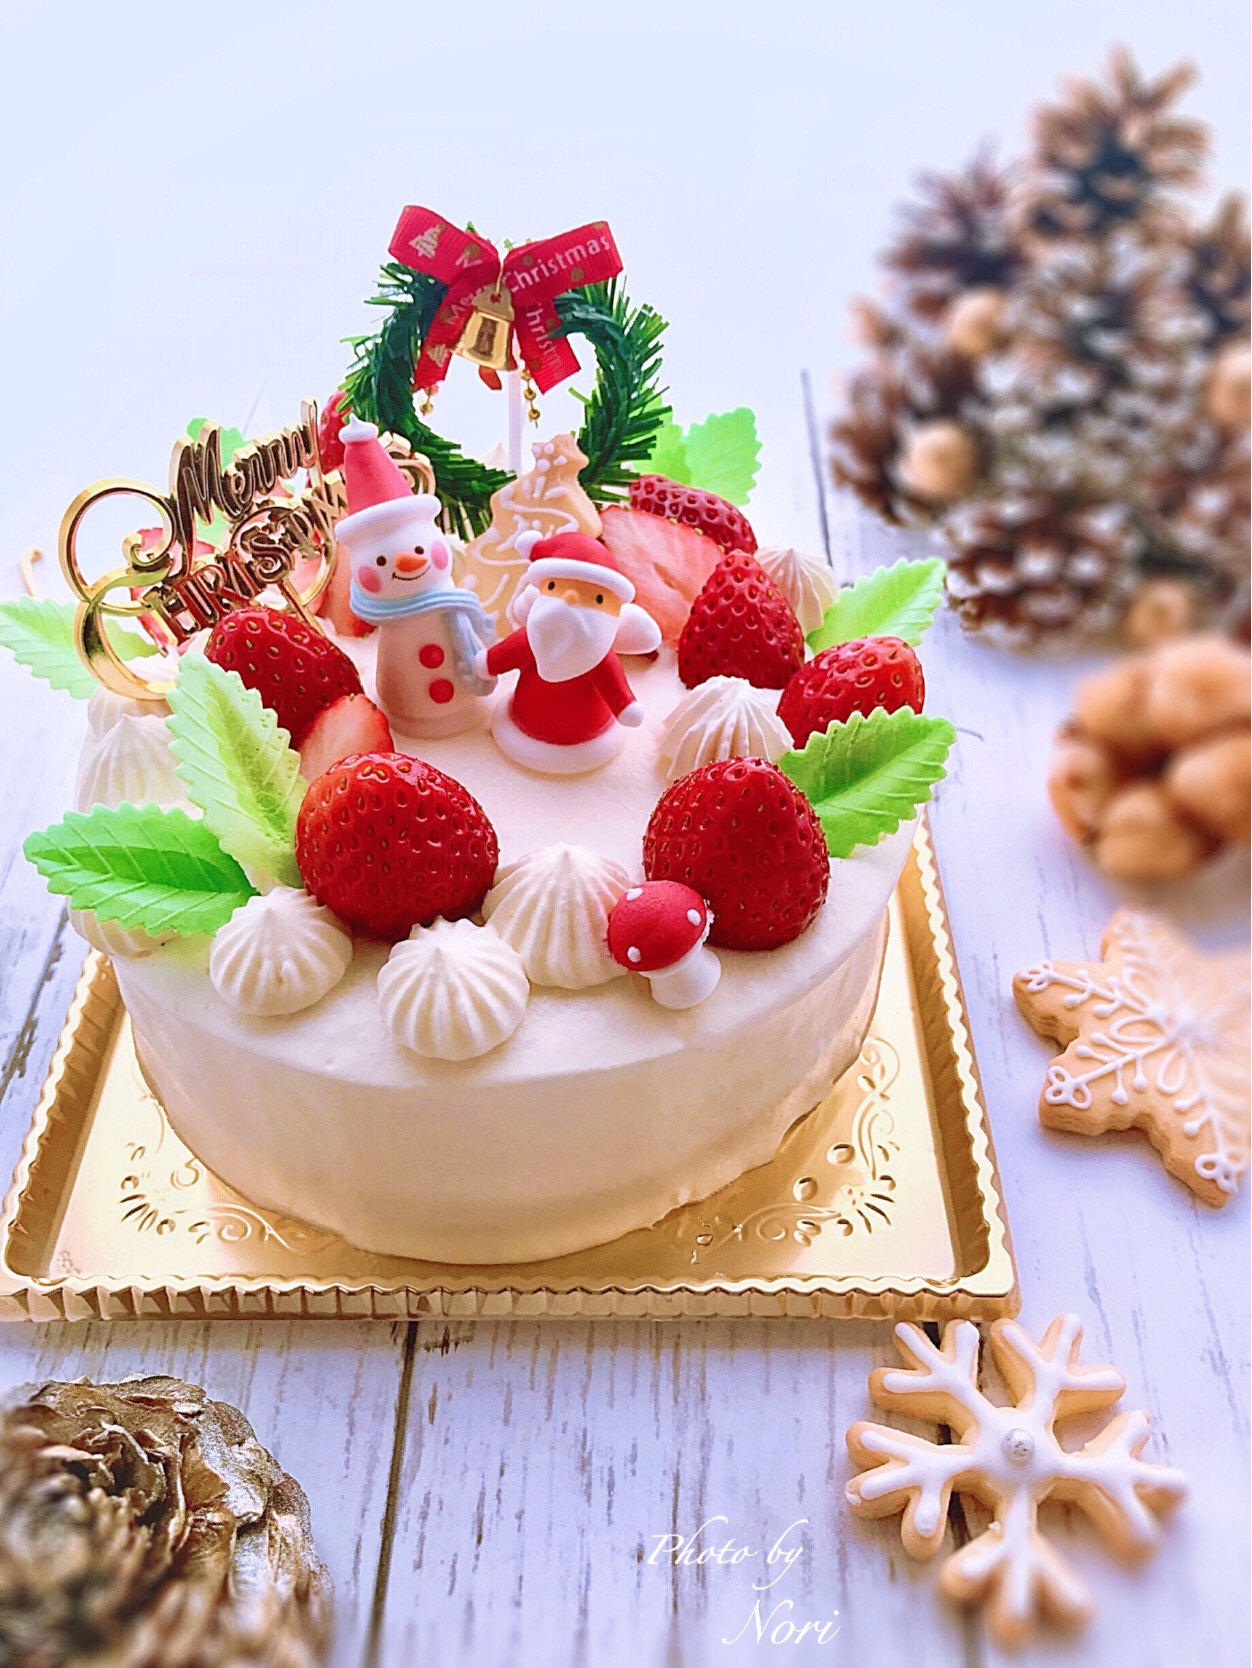 クリスマスケーキクリスマスケーキ クリスマス 手作りケーキ ケーキおうちカフェサンタクロース 雪だるま 手作りスイーツ Nori Er3425 Snapdish スナップディッシュ Id Pwftca